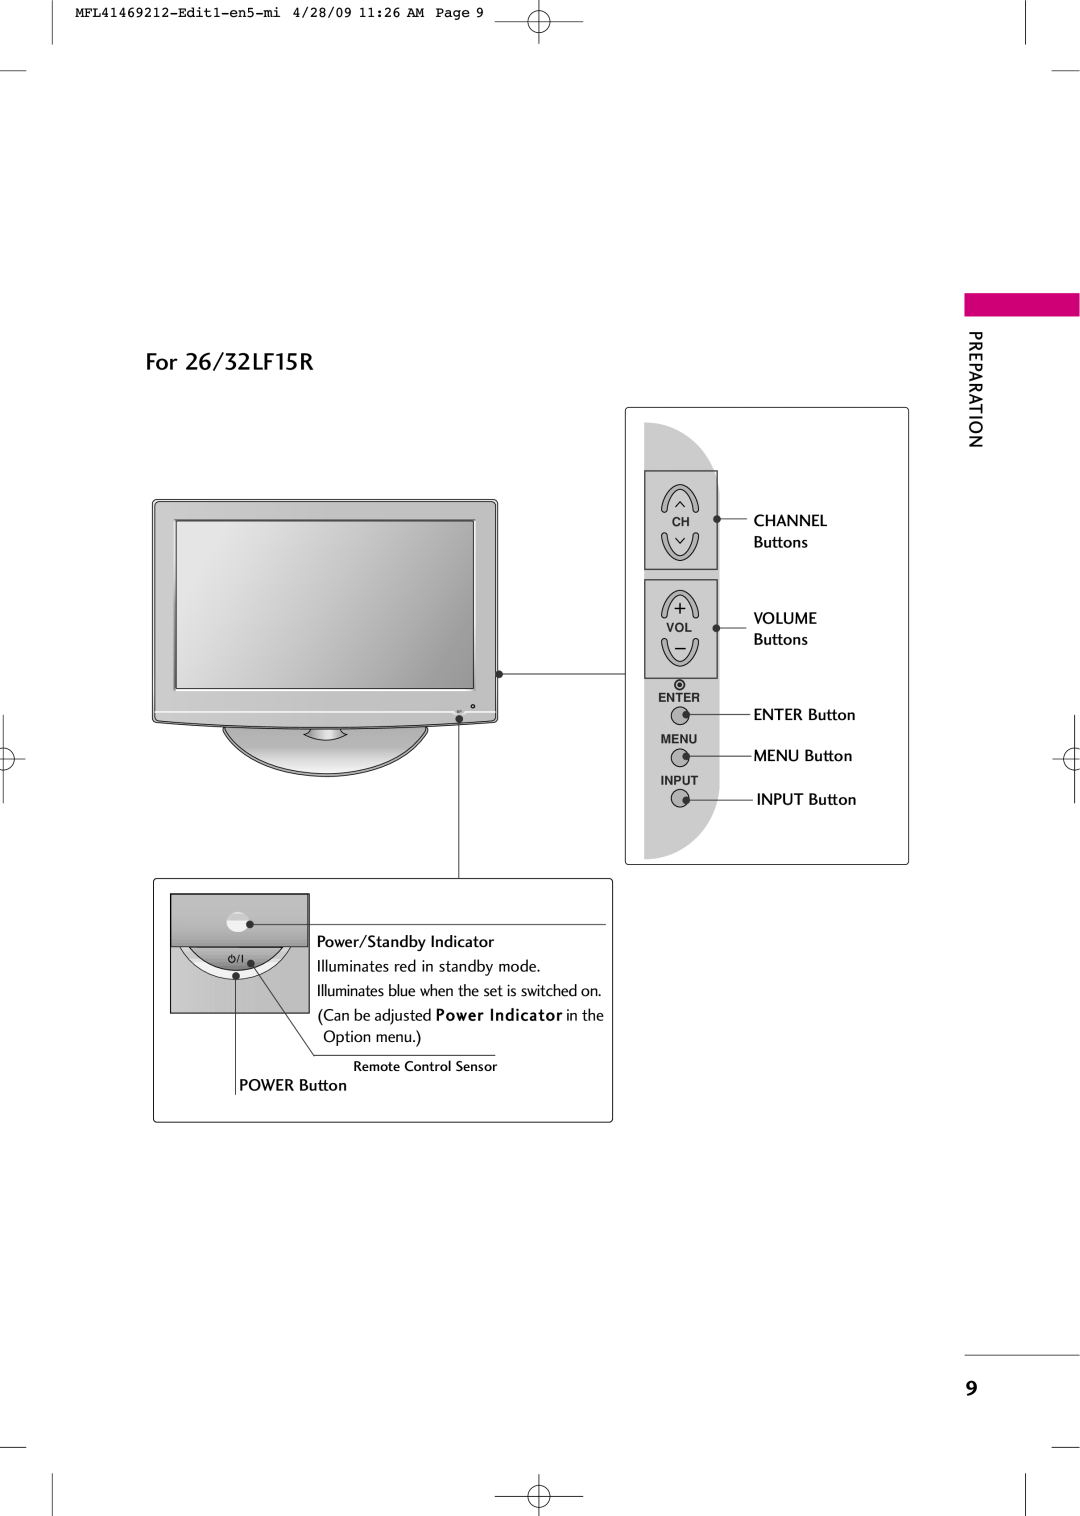 LG Electronics 2230R-MA For 26/32LF15R, Channel, Buttons, Volume, MENU Button, ENTER Button, INPUT Button, Enter, Menu 